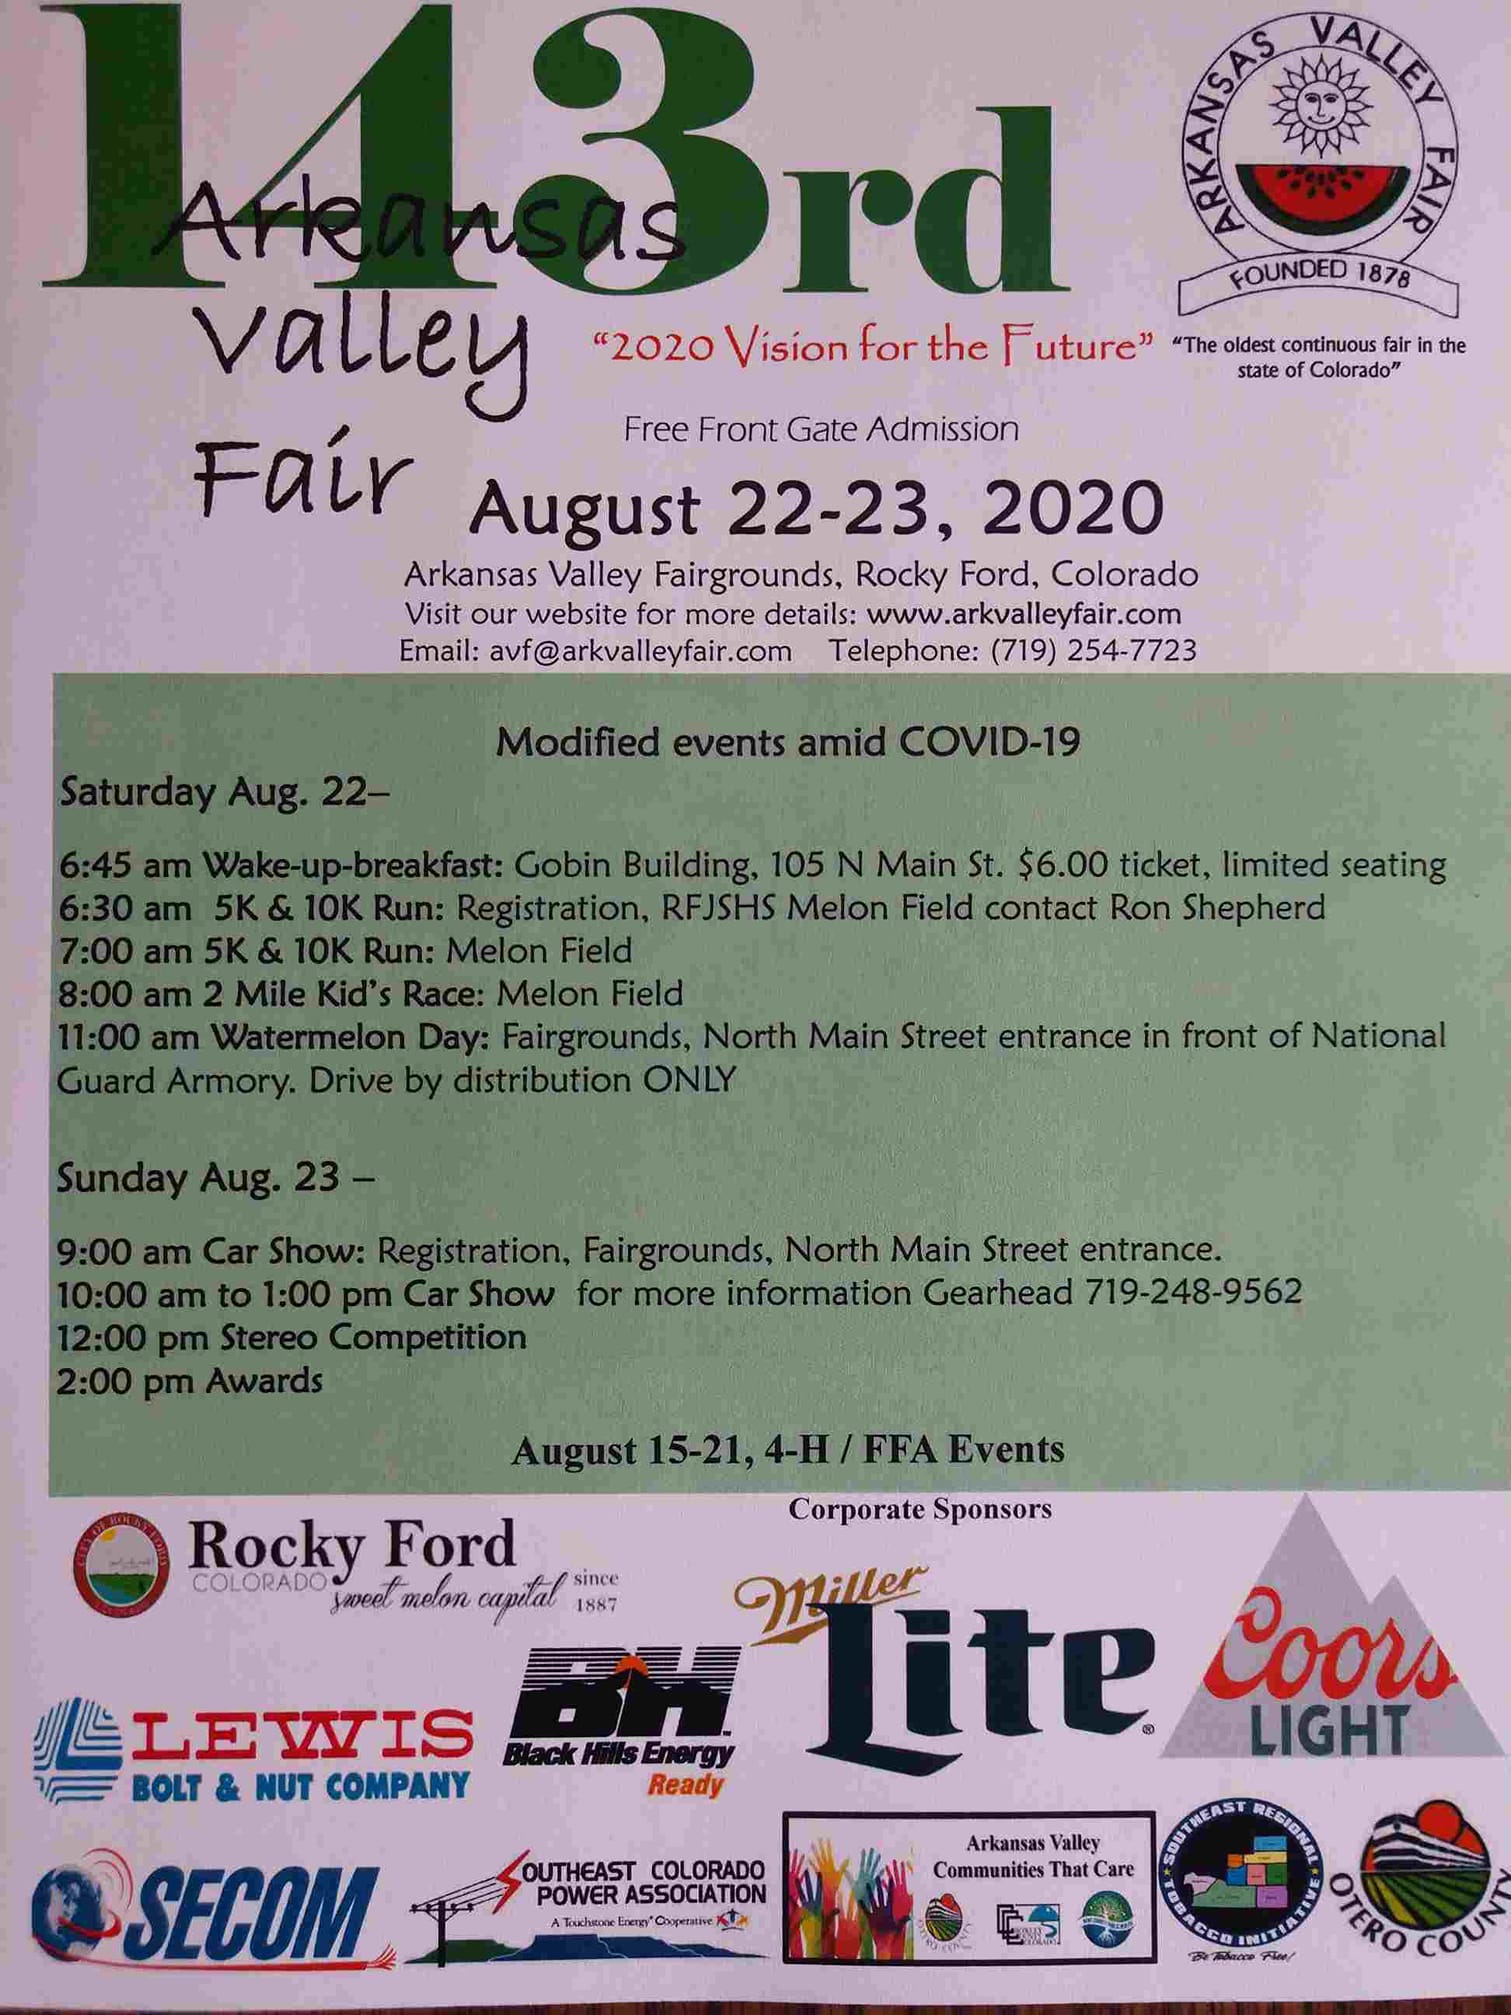 Arkansas Valley Fair Visit La Junta